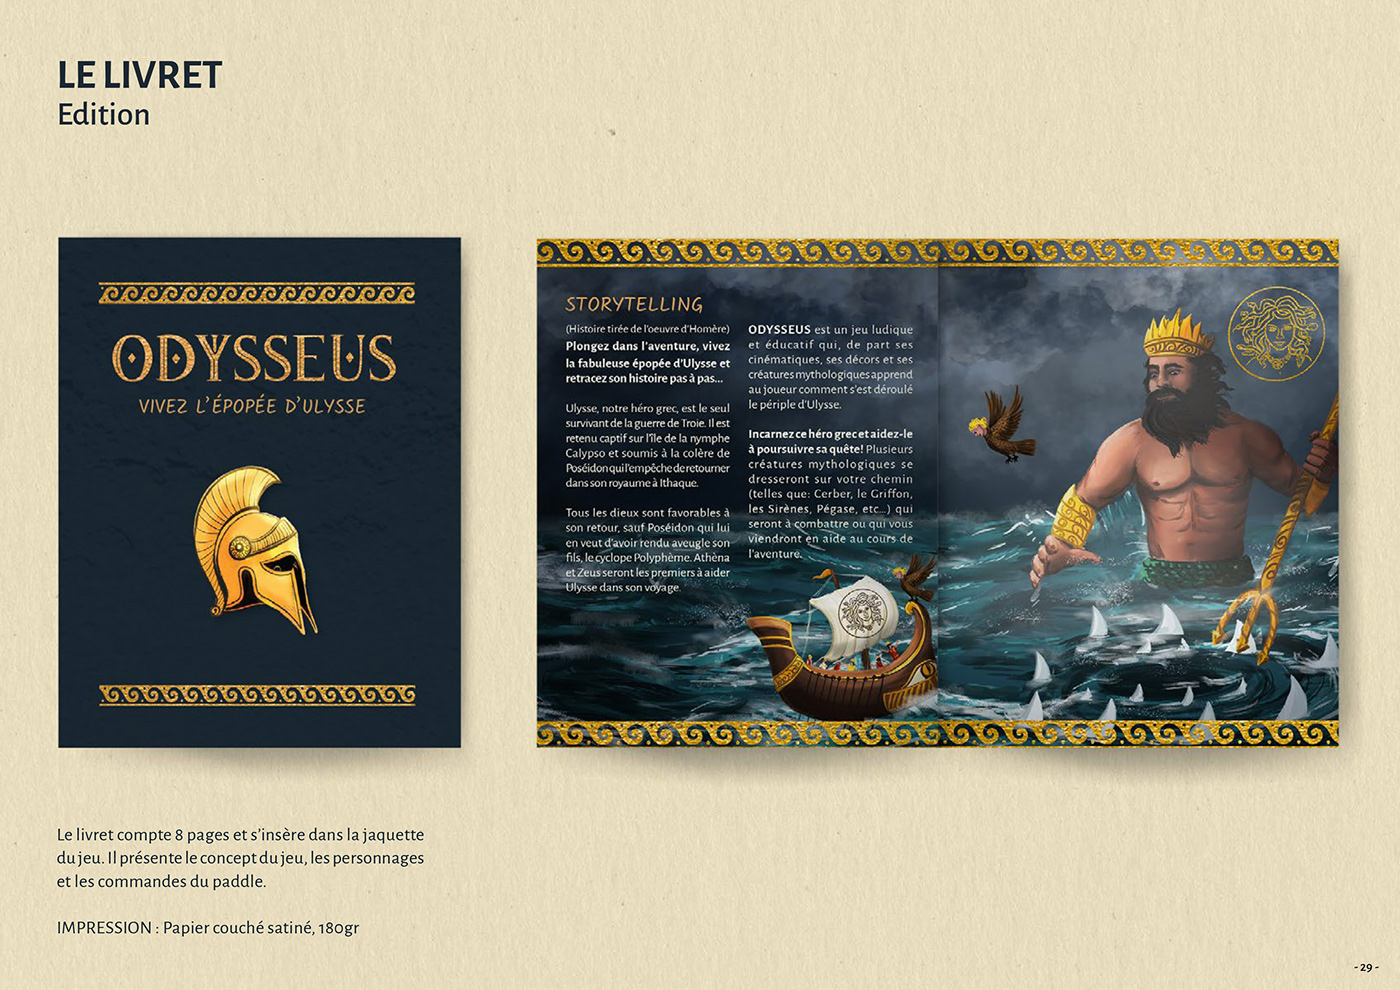 adventure game graphicdesign grec ILLUSTRATION  mythology odyssee poseidon ps5 ulysse